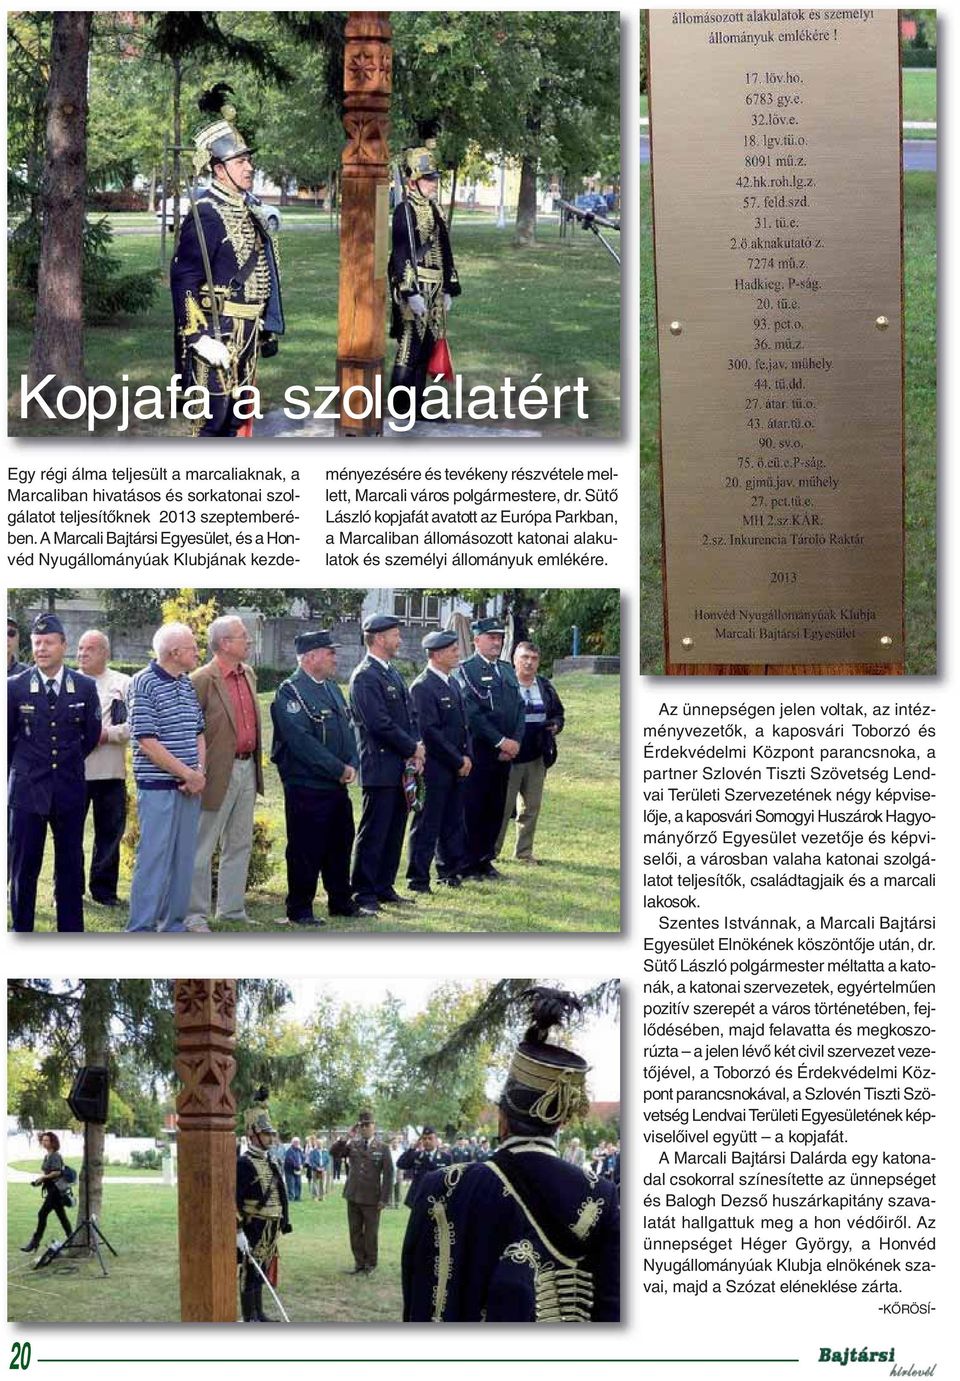 Sütő László kopjafát avatott az Európa Parkban, a Marcaliban állomásozott katonai alakulatok és személyi állományuk emlékére.